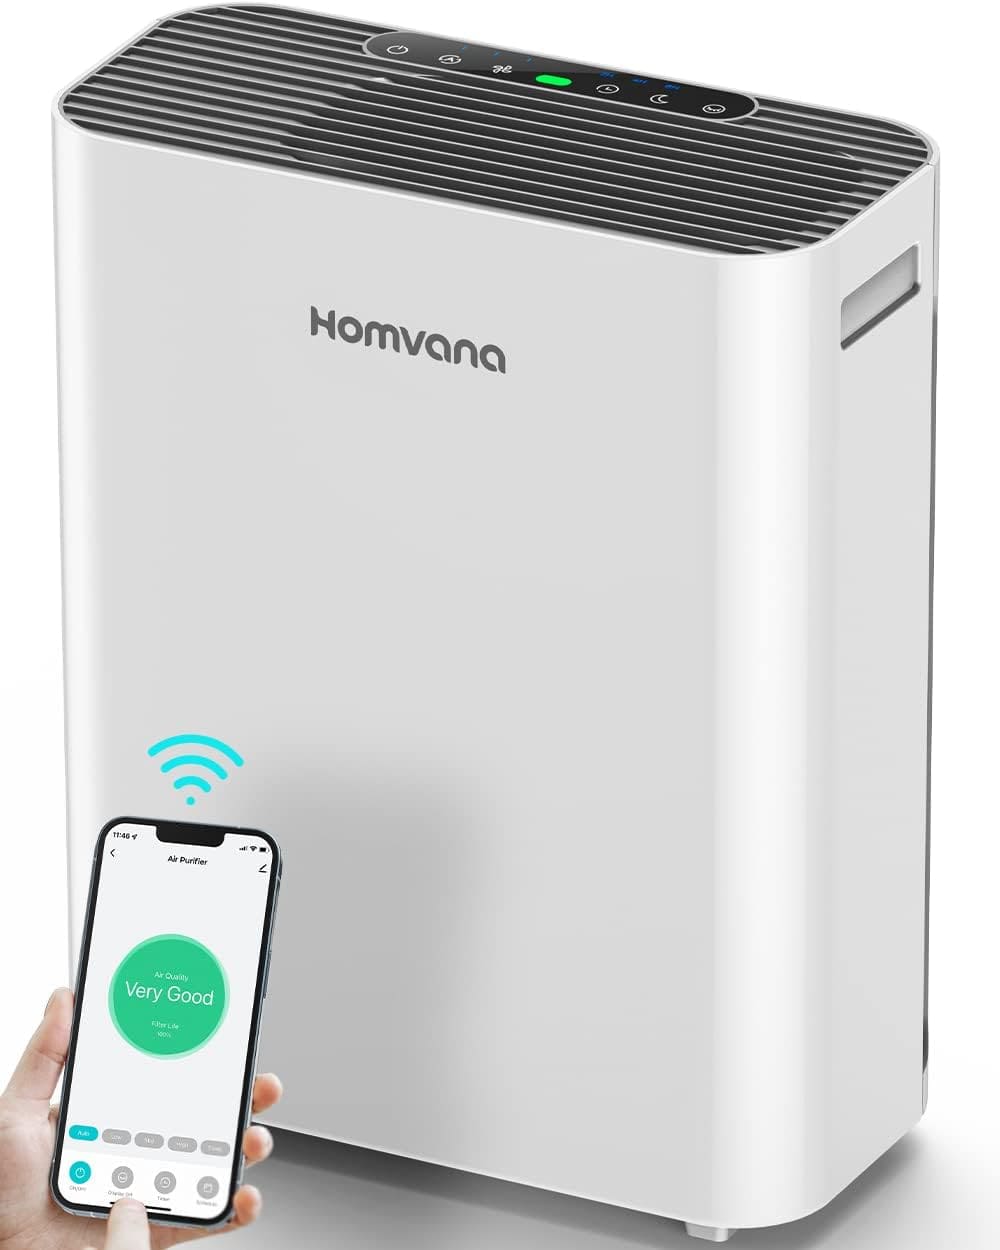 Homvana Smart Air Purifier Review